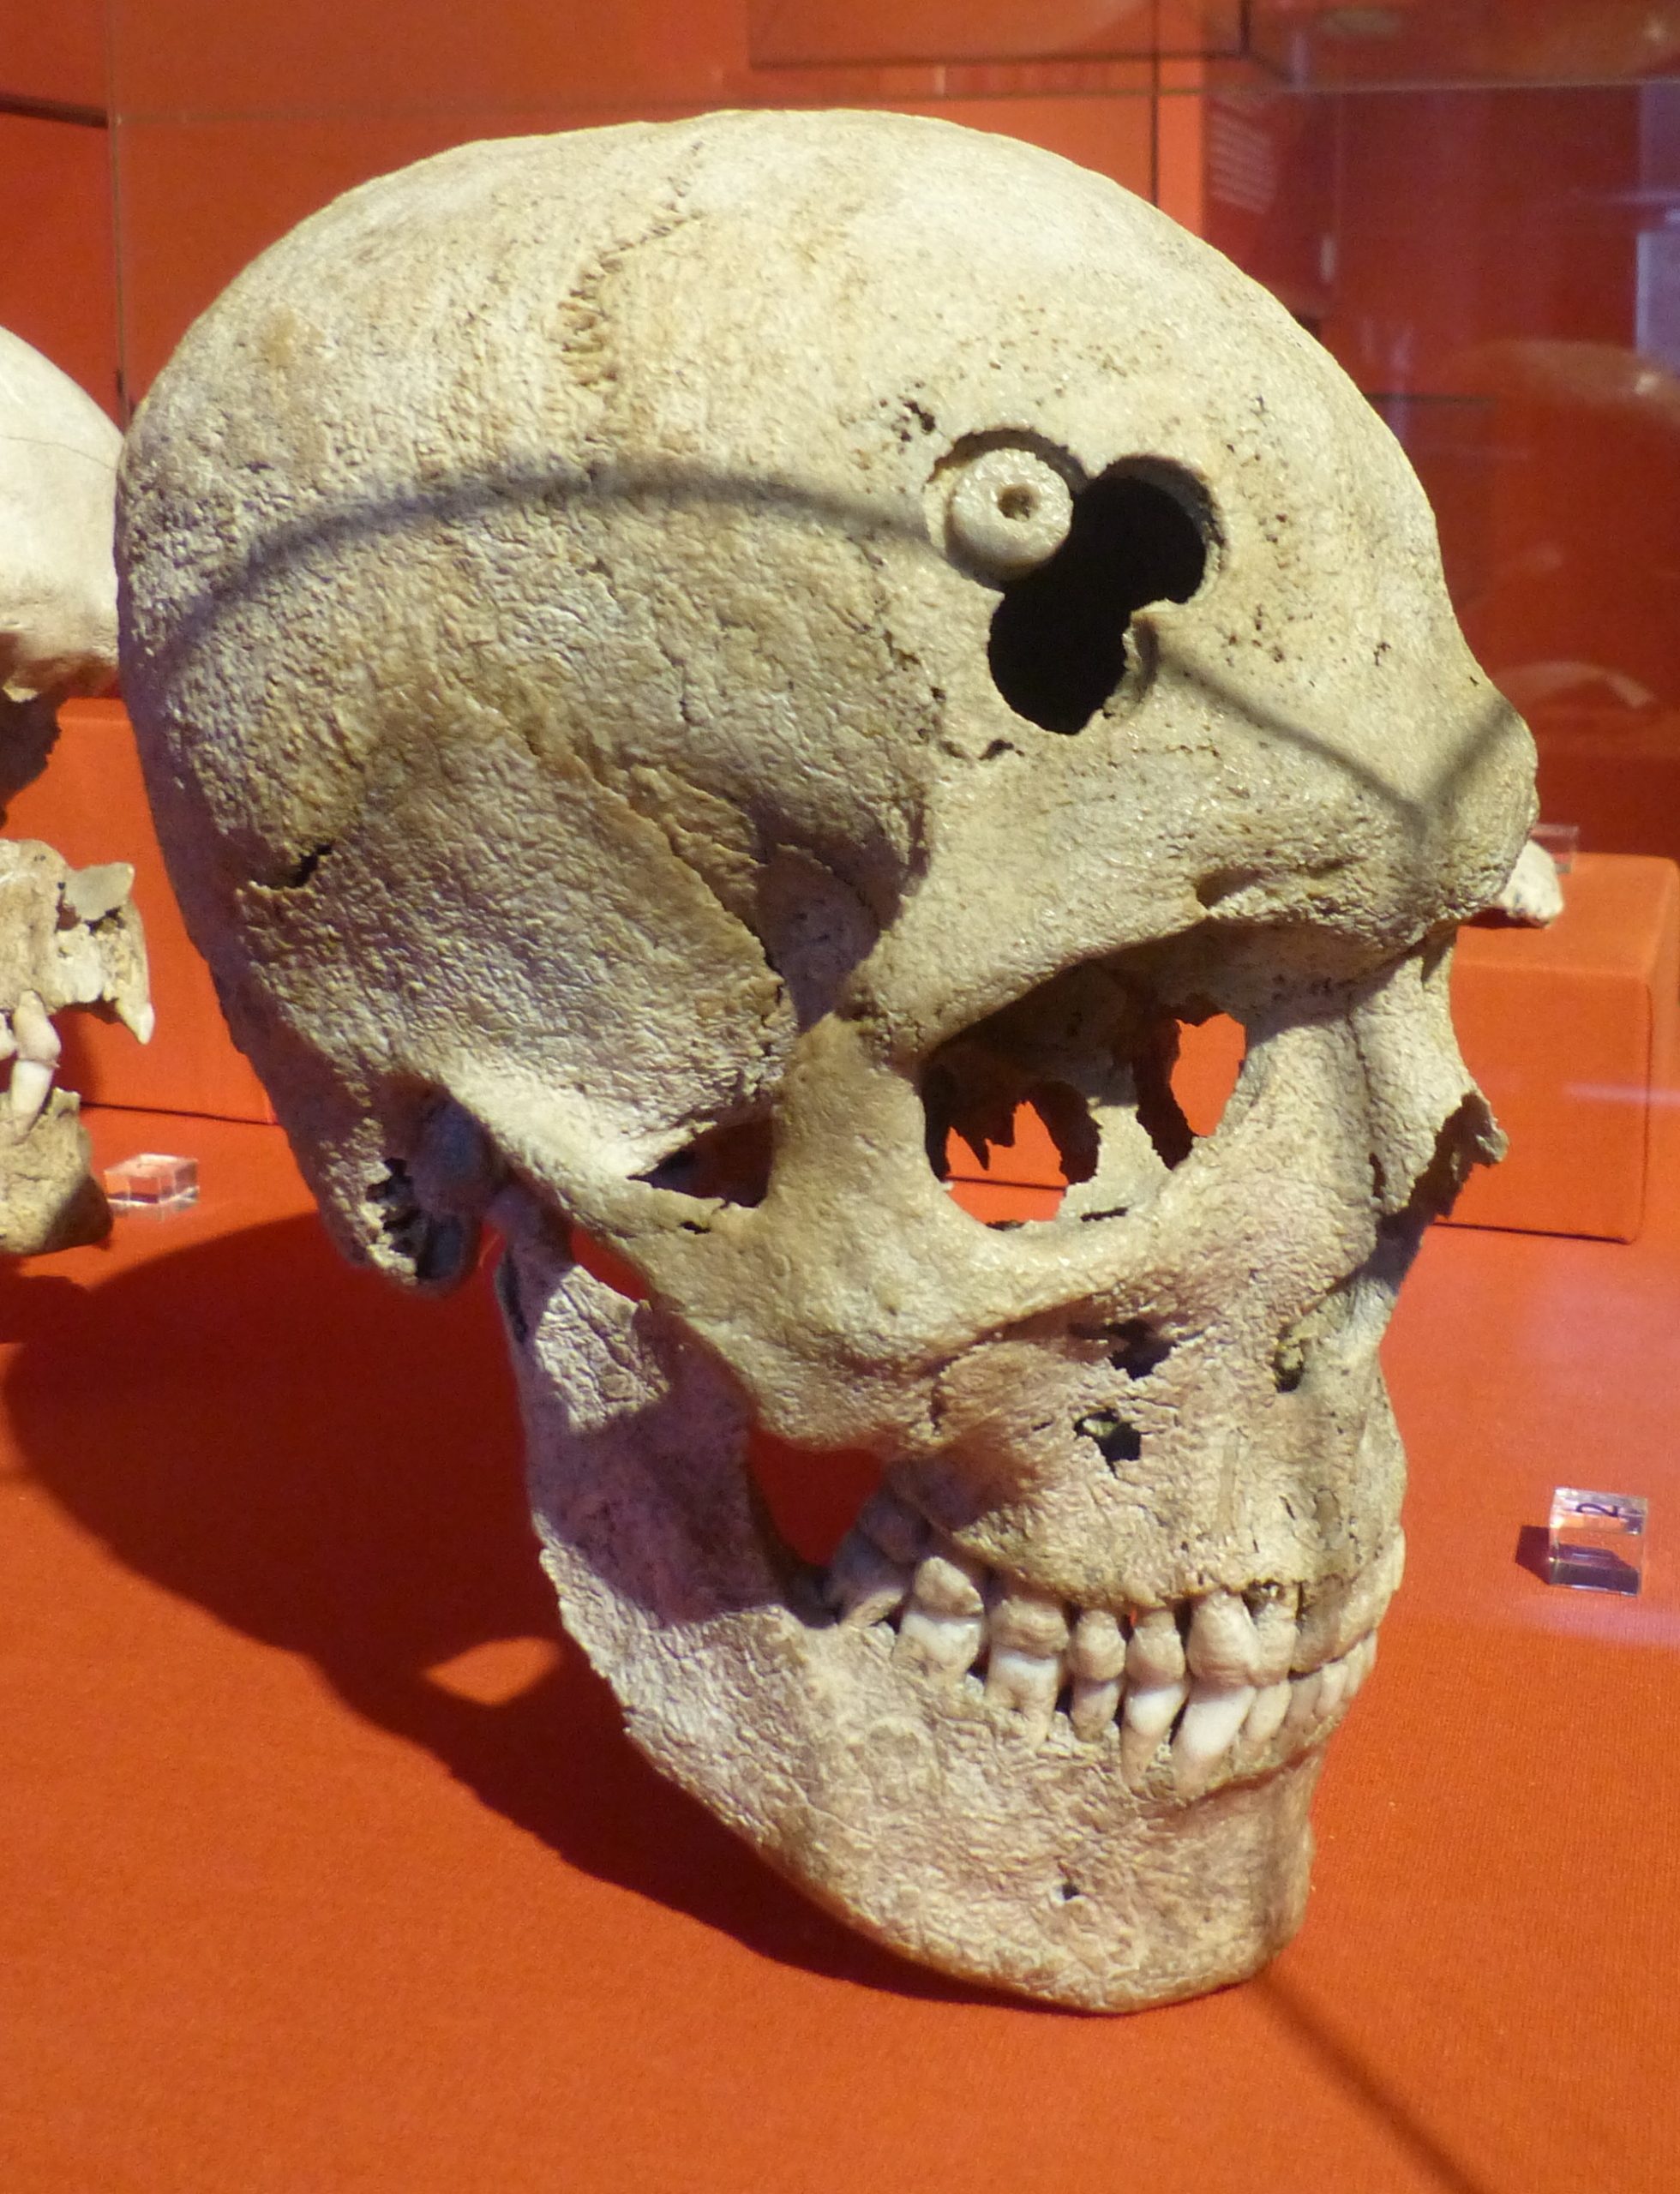 عملية ثقب الرأس كان يتم إجراؤها في مختلف الأماكن حول العالم في التاريخ القديم - WikiMedia